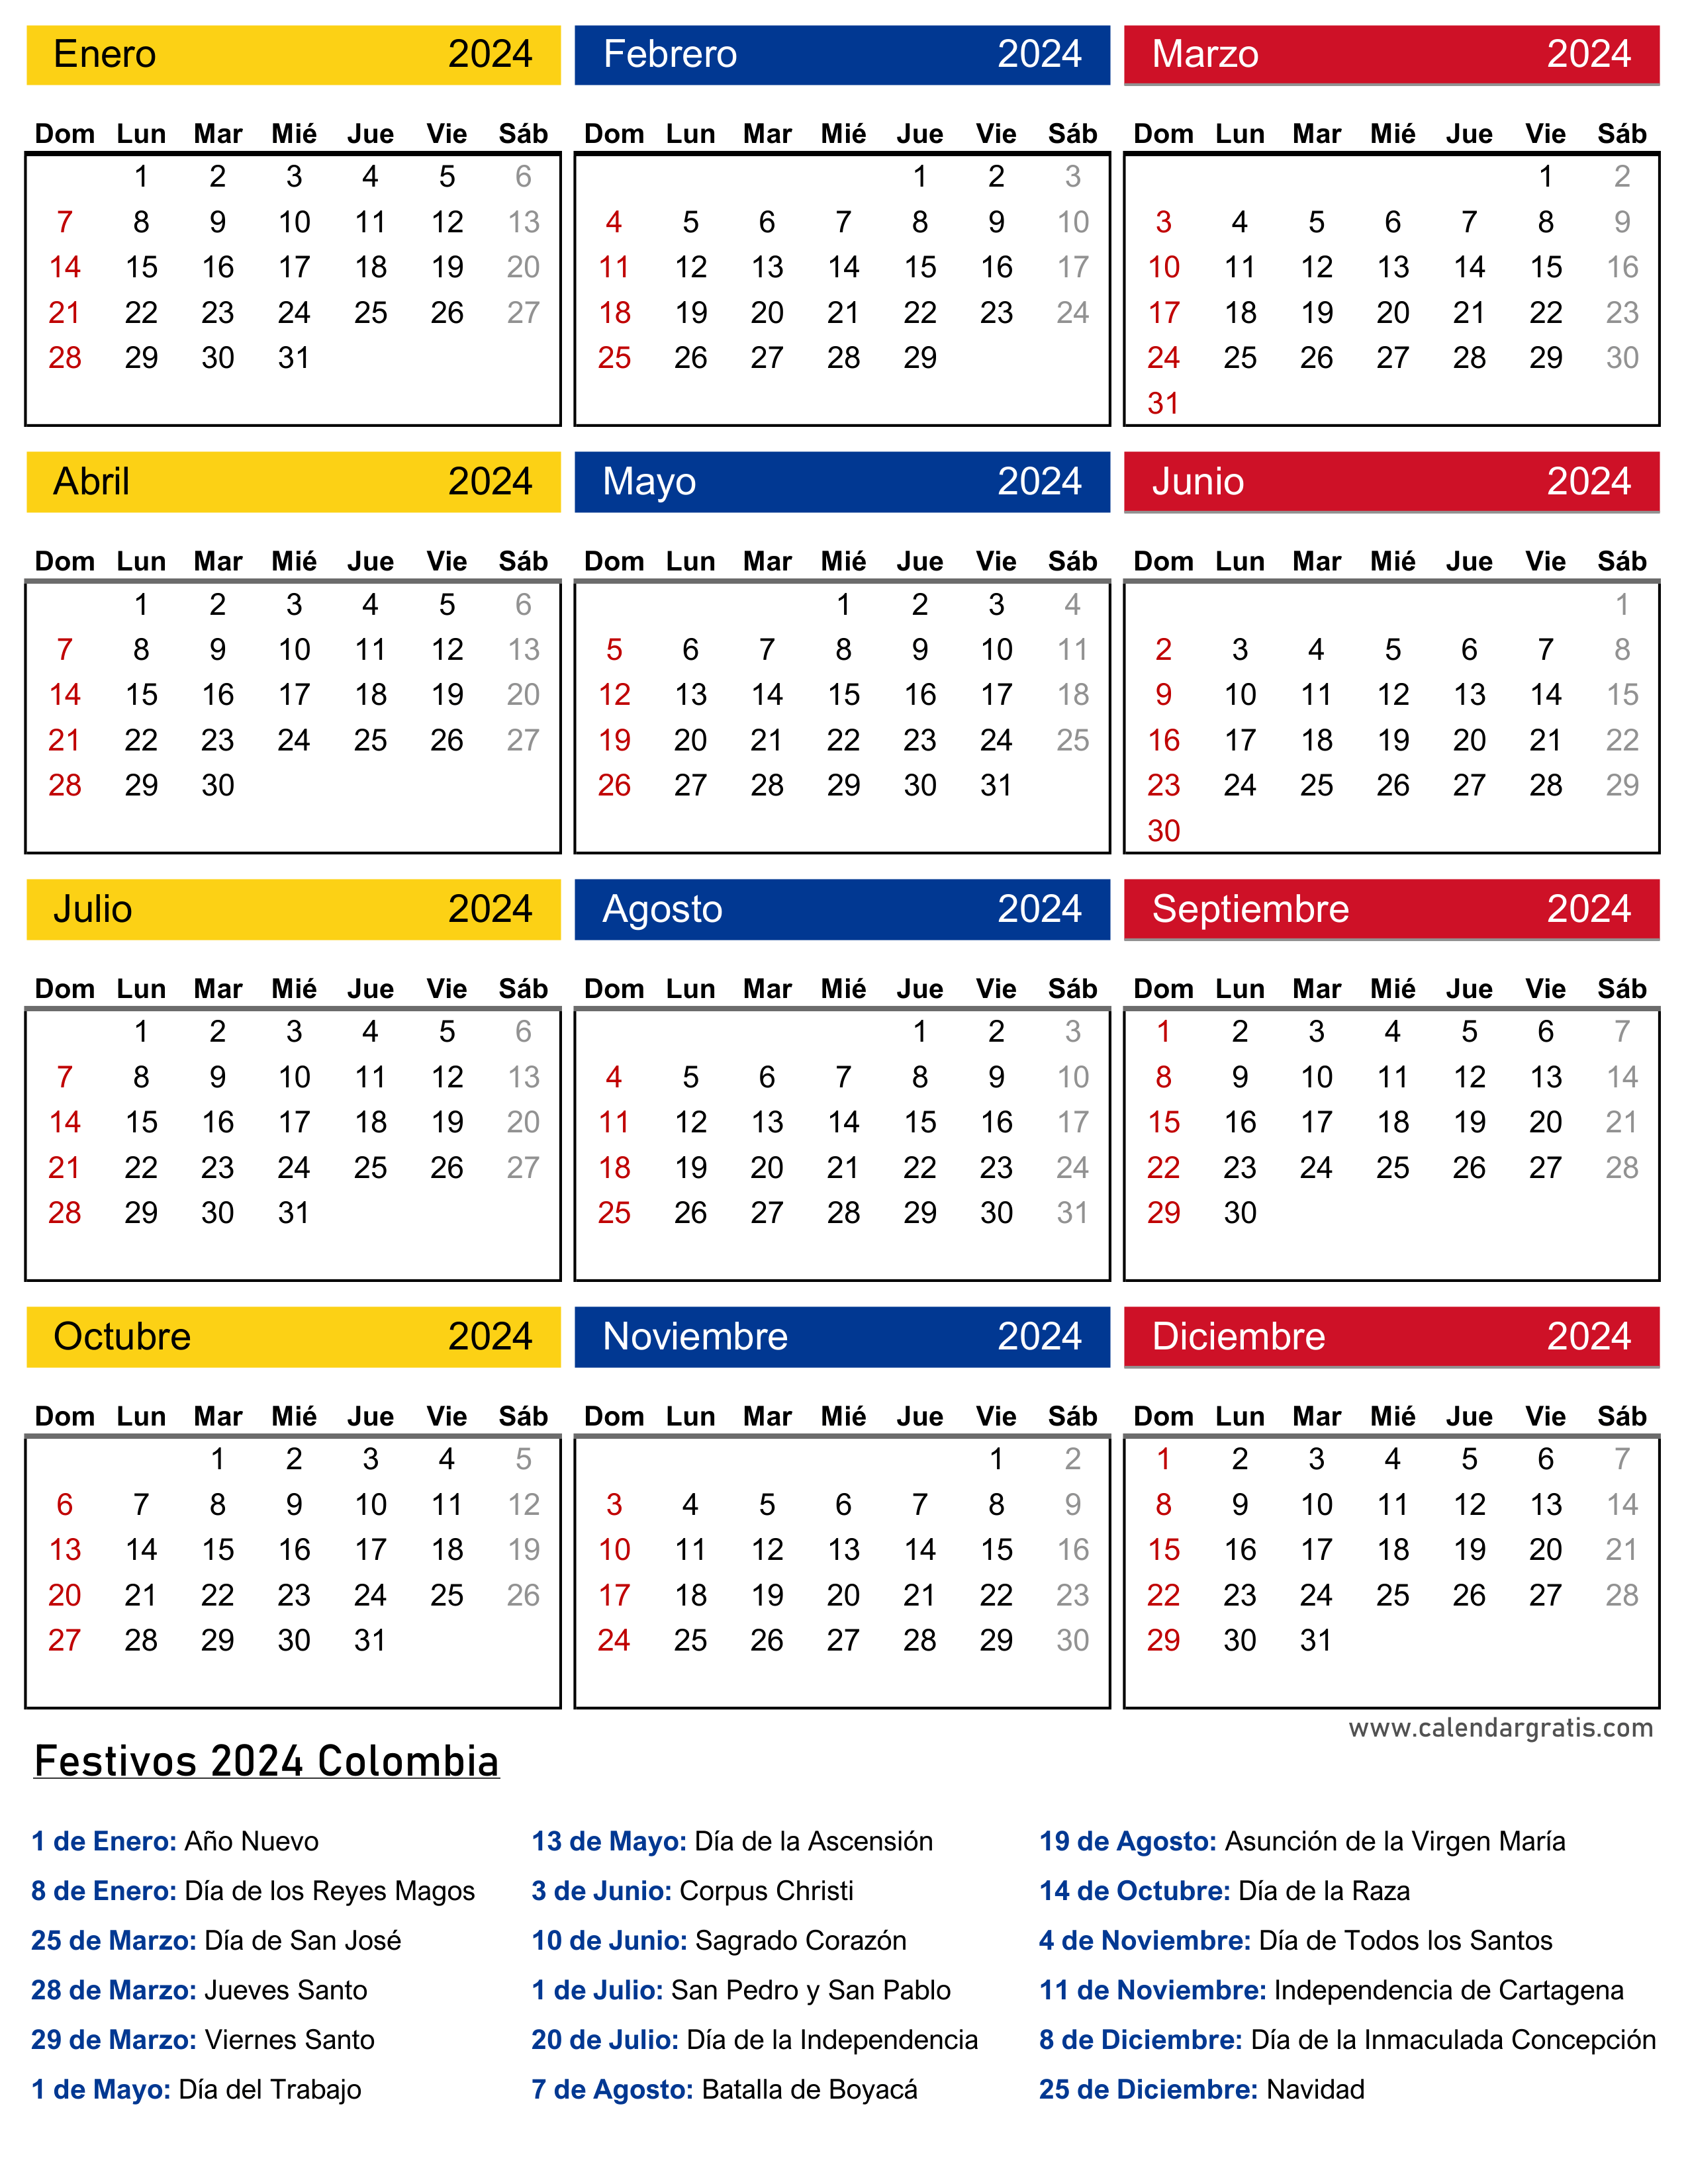 Imagen vertical del Festivos Calendario 2023 Colombia, presentando una lista detallada de todos los días festivos en la parte inferior. Un recurso imprescindible para planificar tus actividades y vacaciones en el 2023.